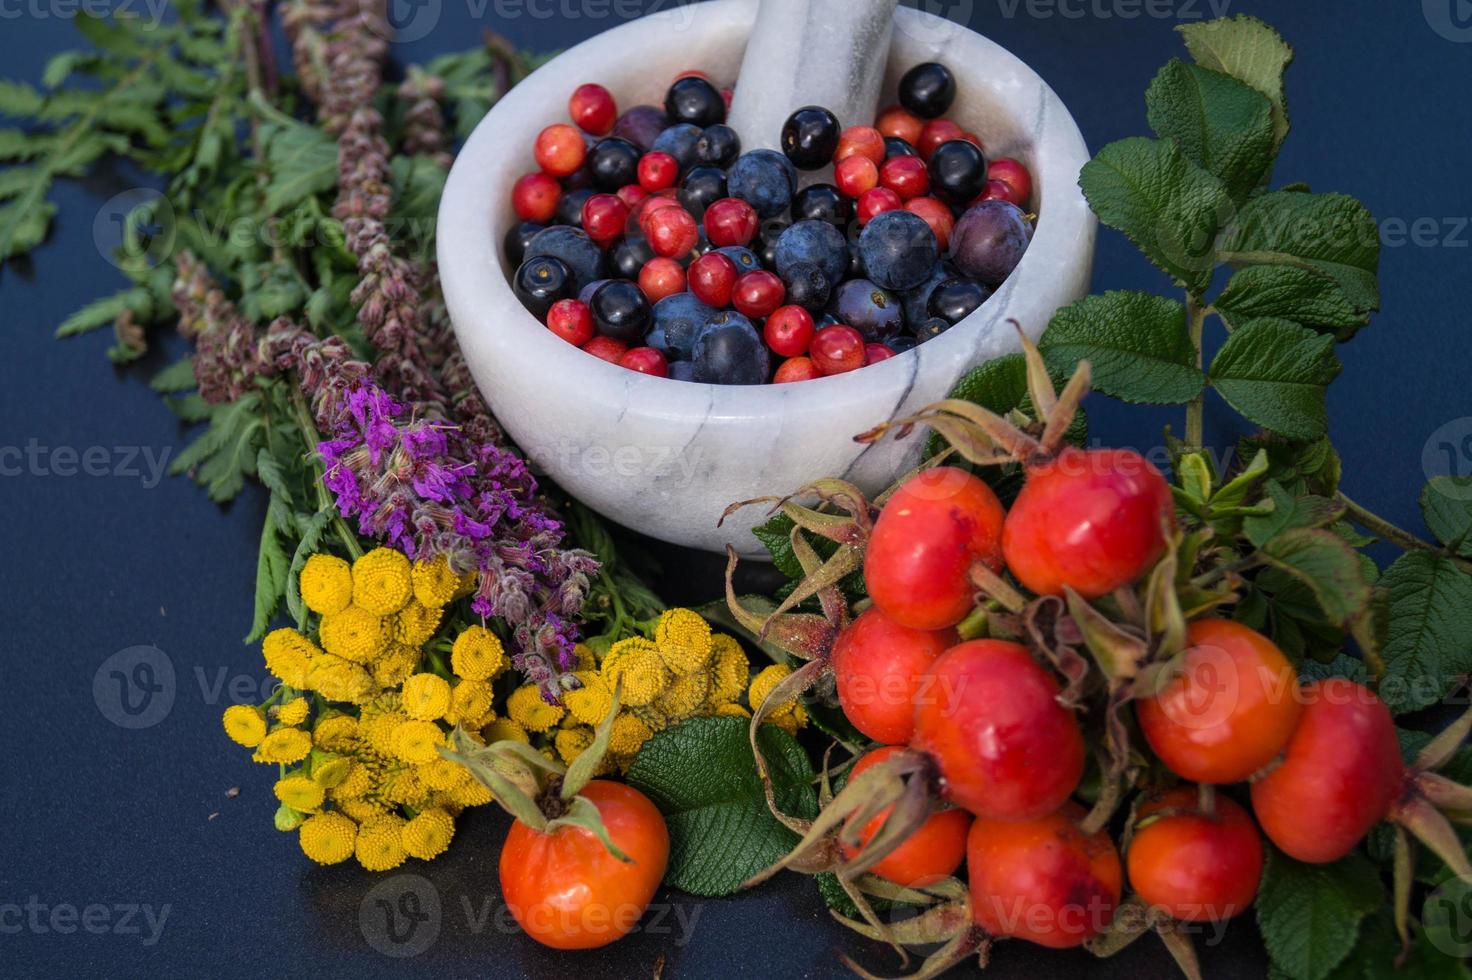 Medicina alternativa con hierbas farmacéuticas frutas y bayas. foto